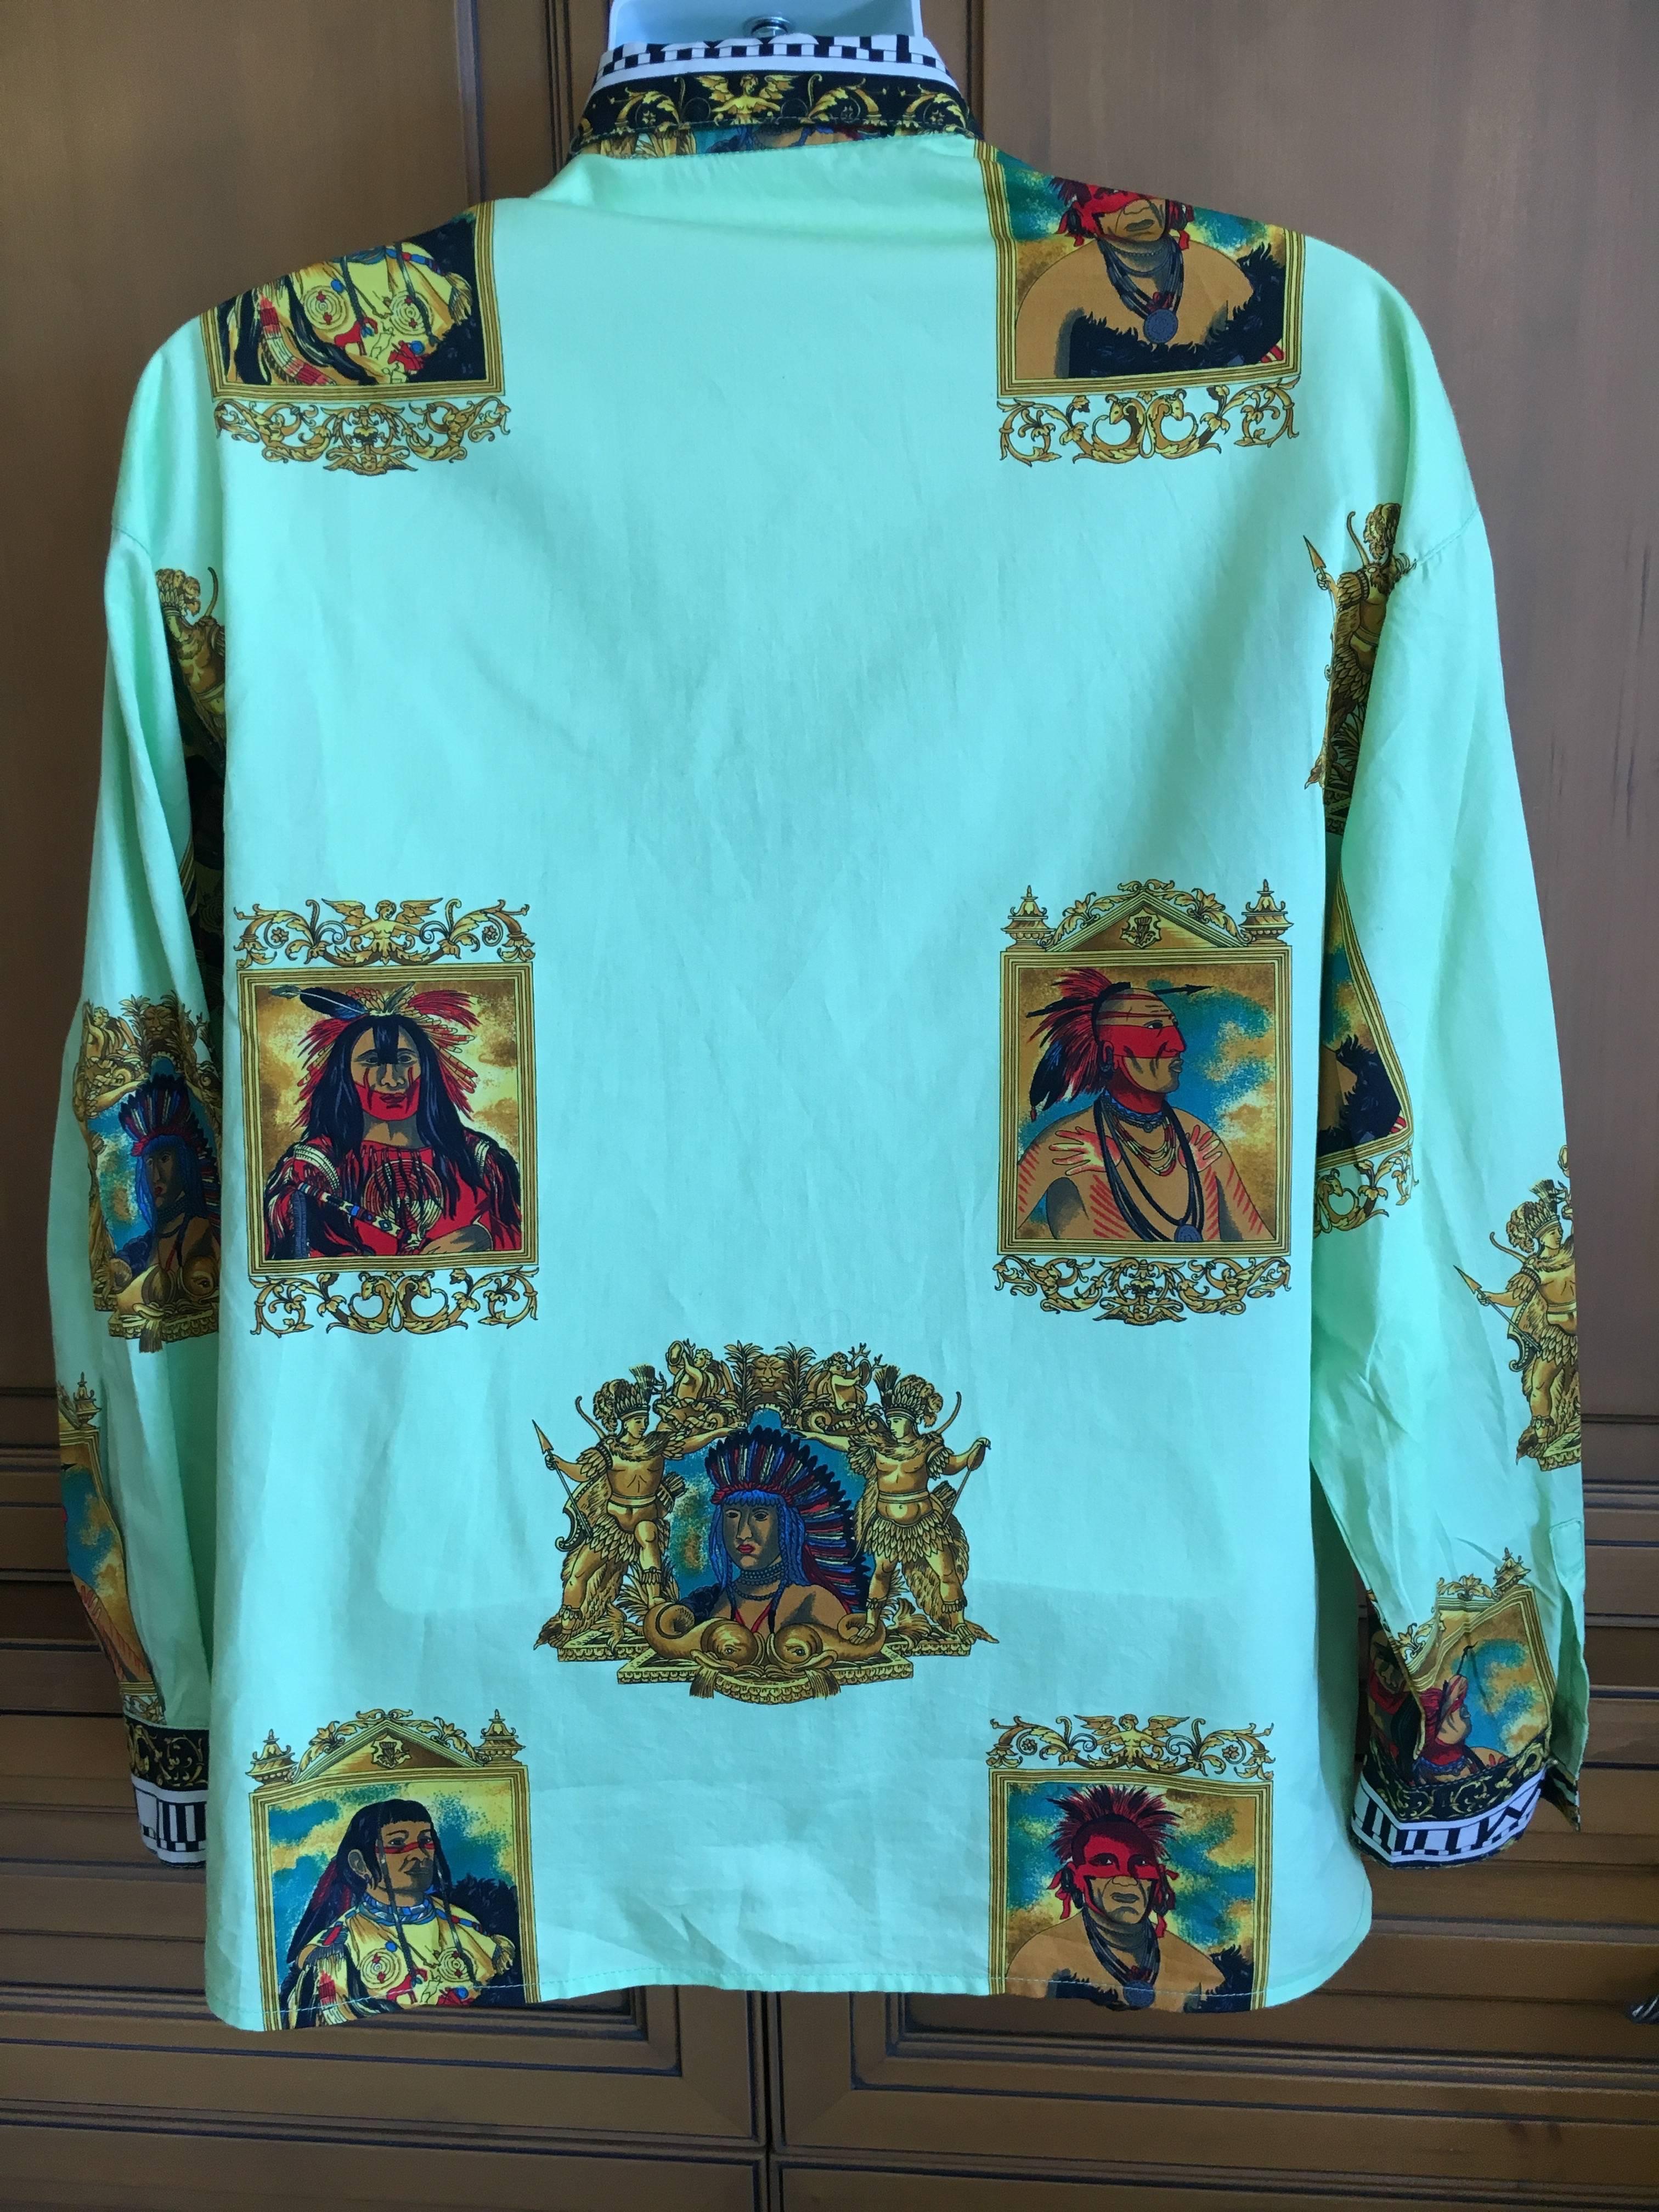 Versus Gianni Versace Rare1993 Cotton Indian Print Men's Large Shirt  5